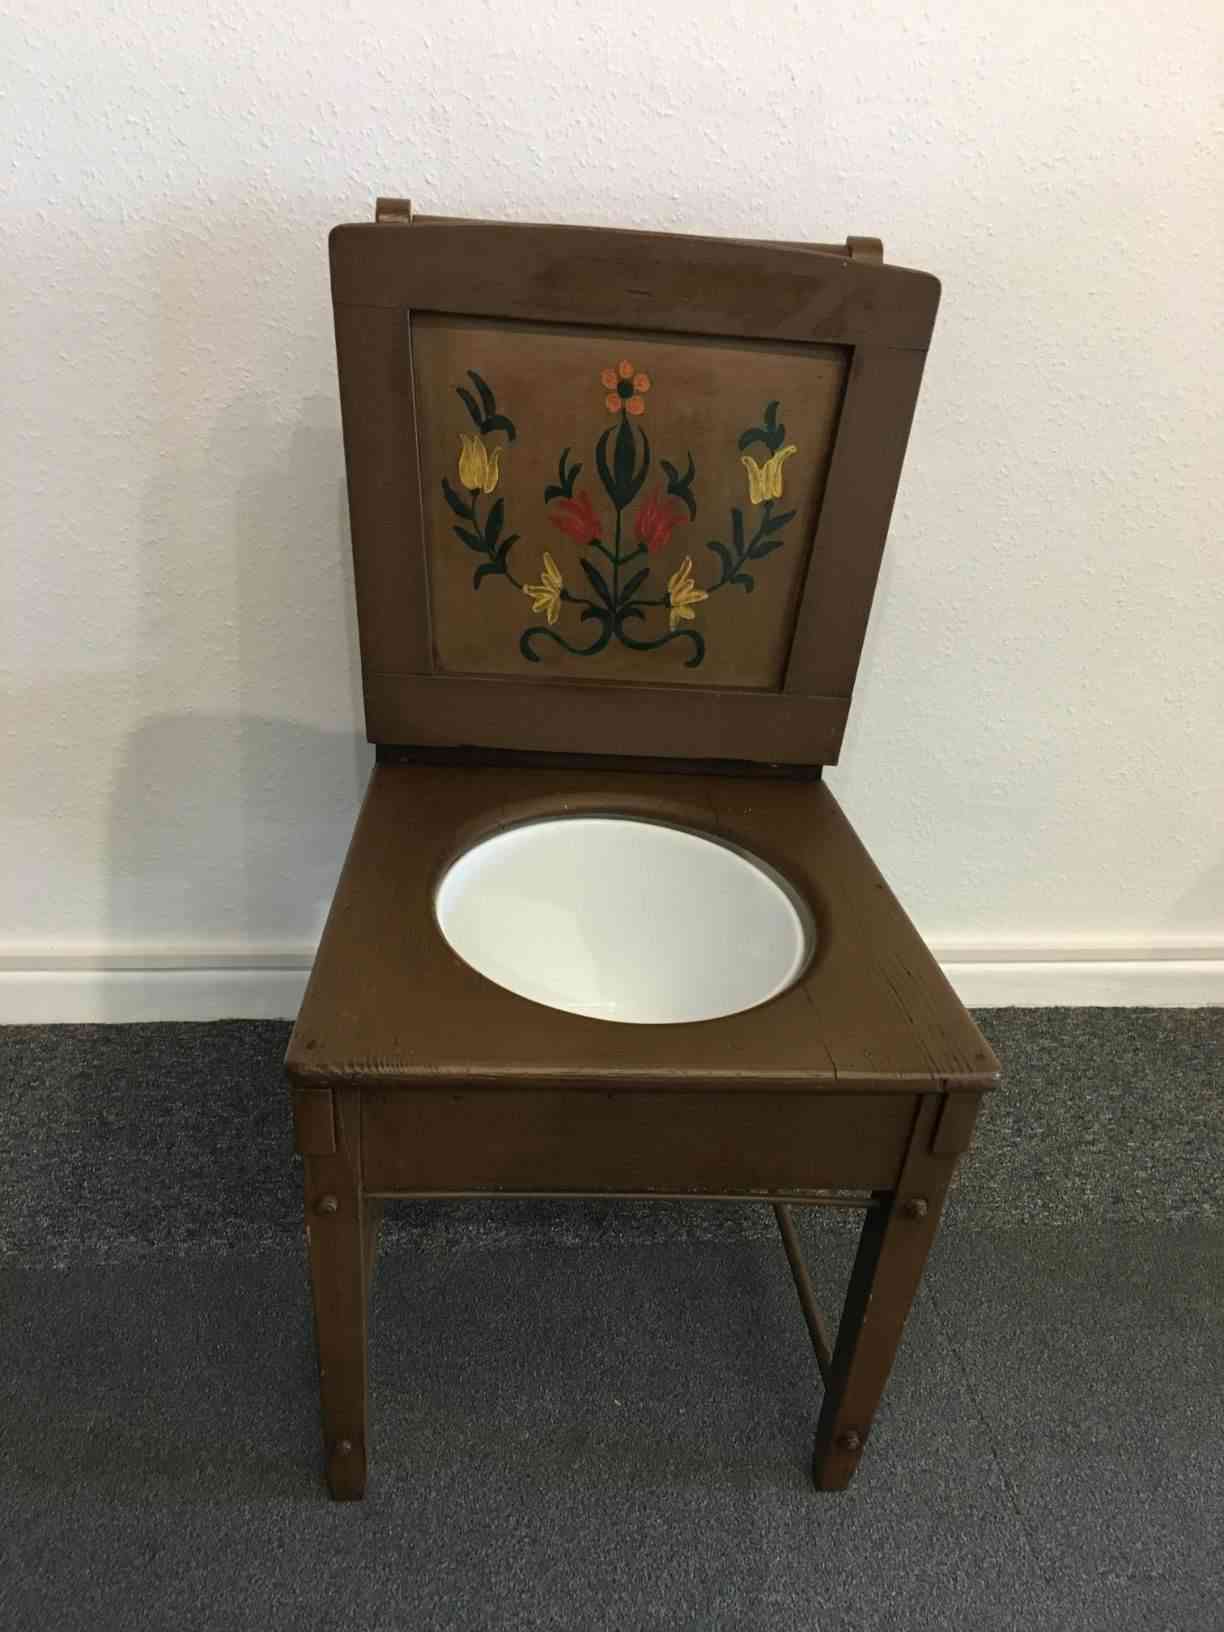 Toiletstol med original potte med blomster motiv under sæde, potte har lidt emalje afskalning. Pris: 750,- Kr.